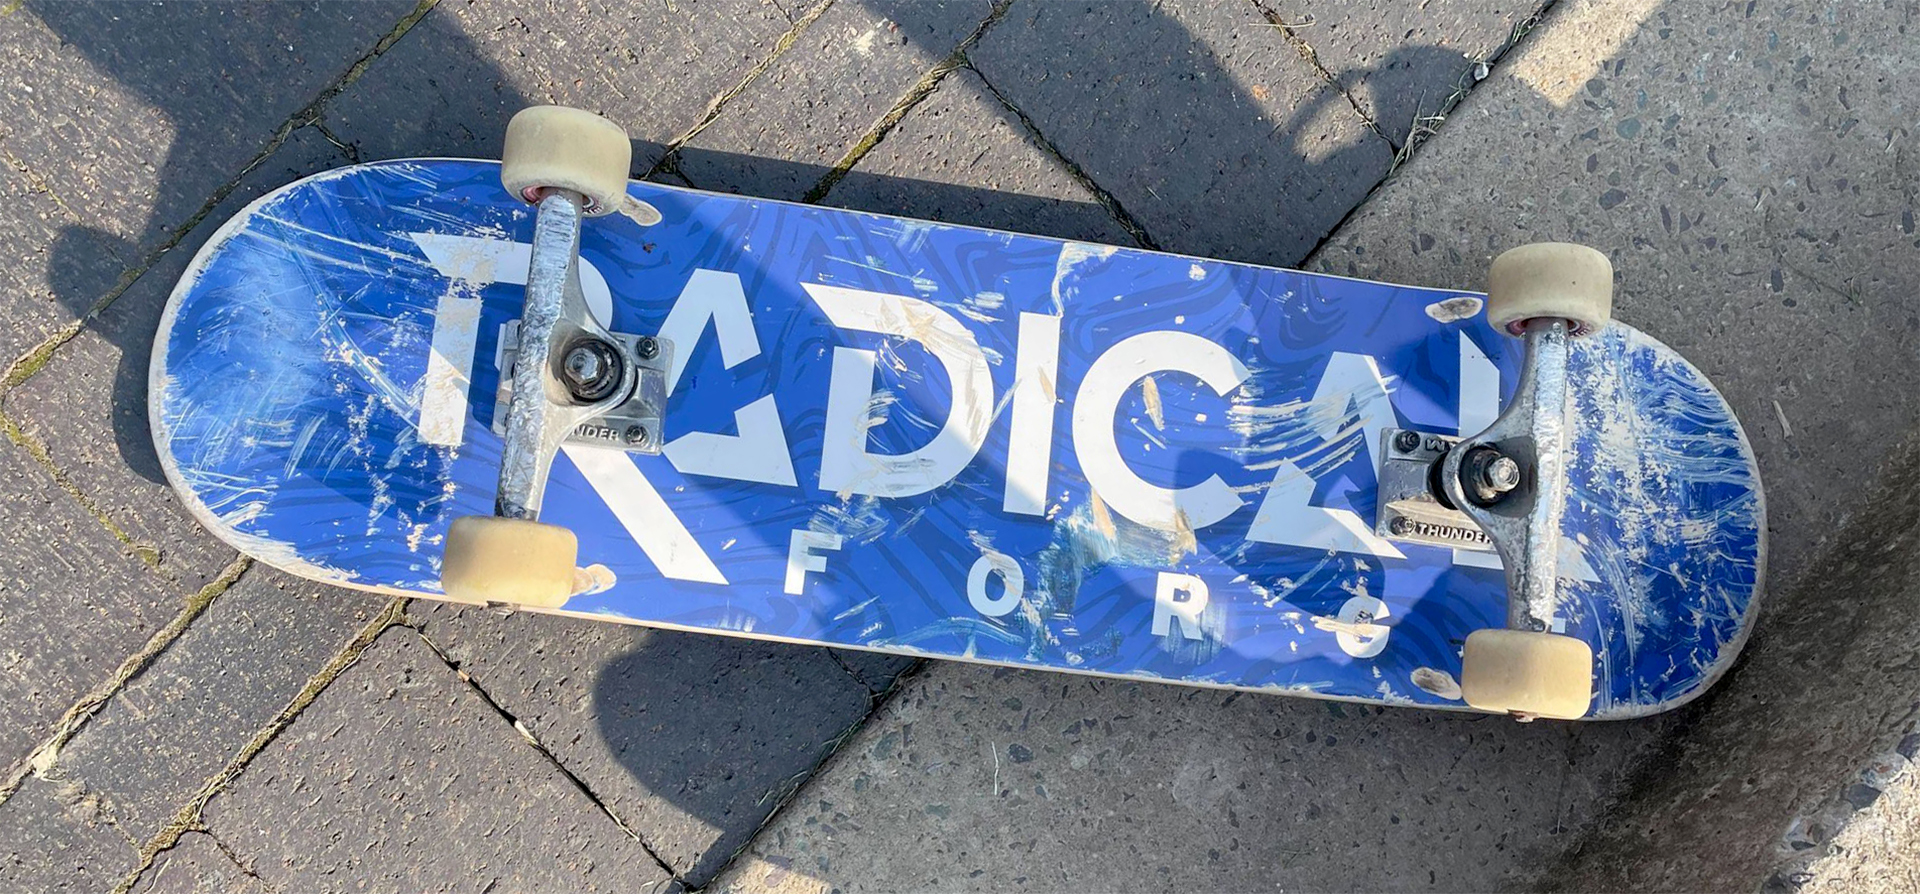 radical forge skateboard